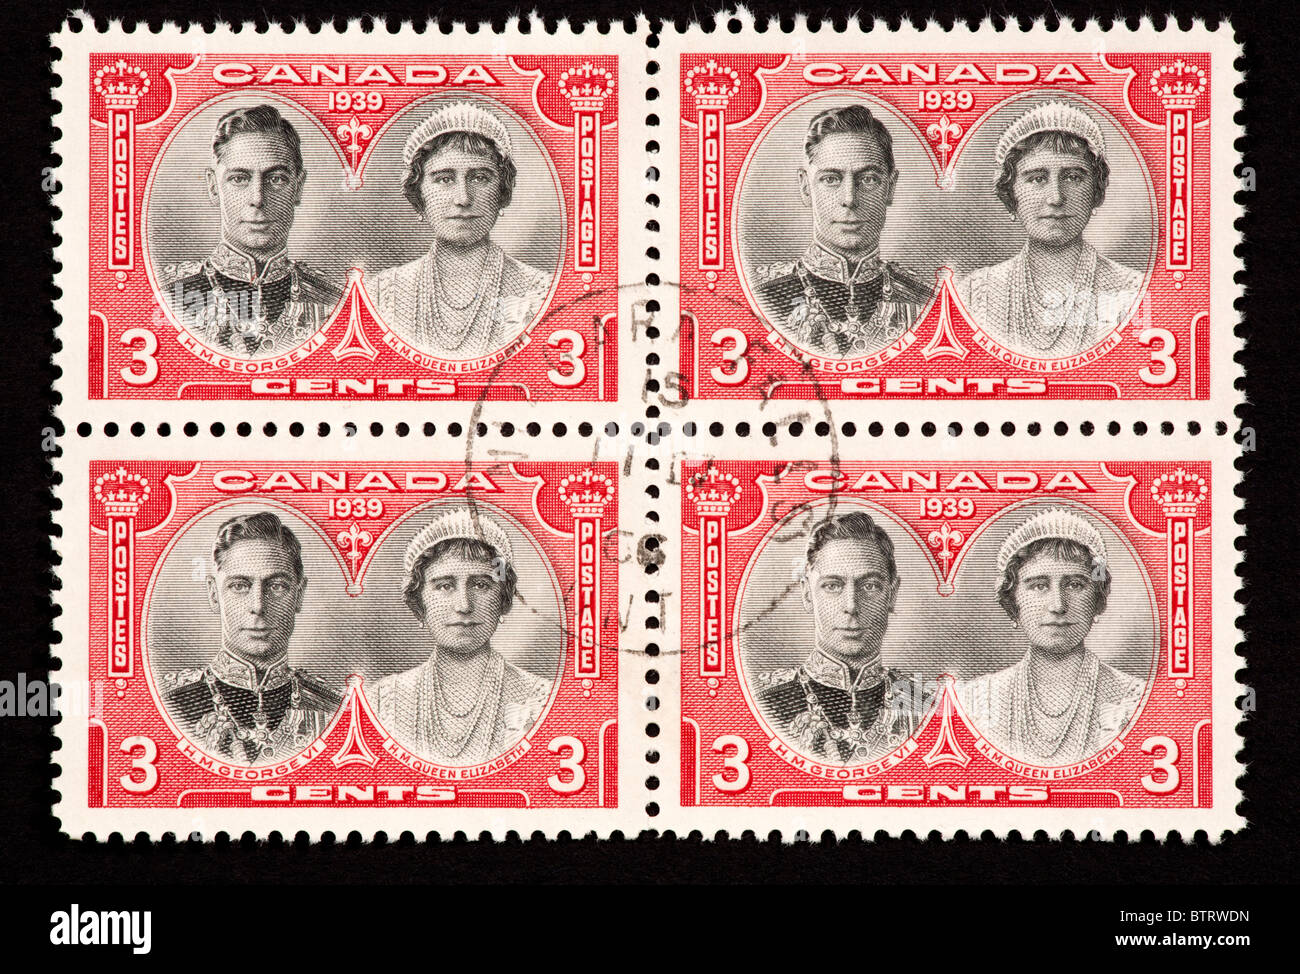 Francobolli dal Canada che raffigura il re Giorgio VI e la Regina Elisabetta. Foto Stock